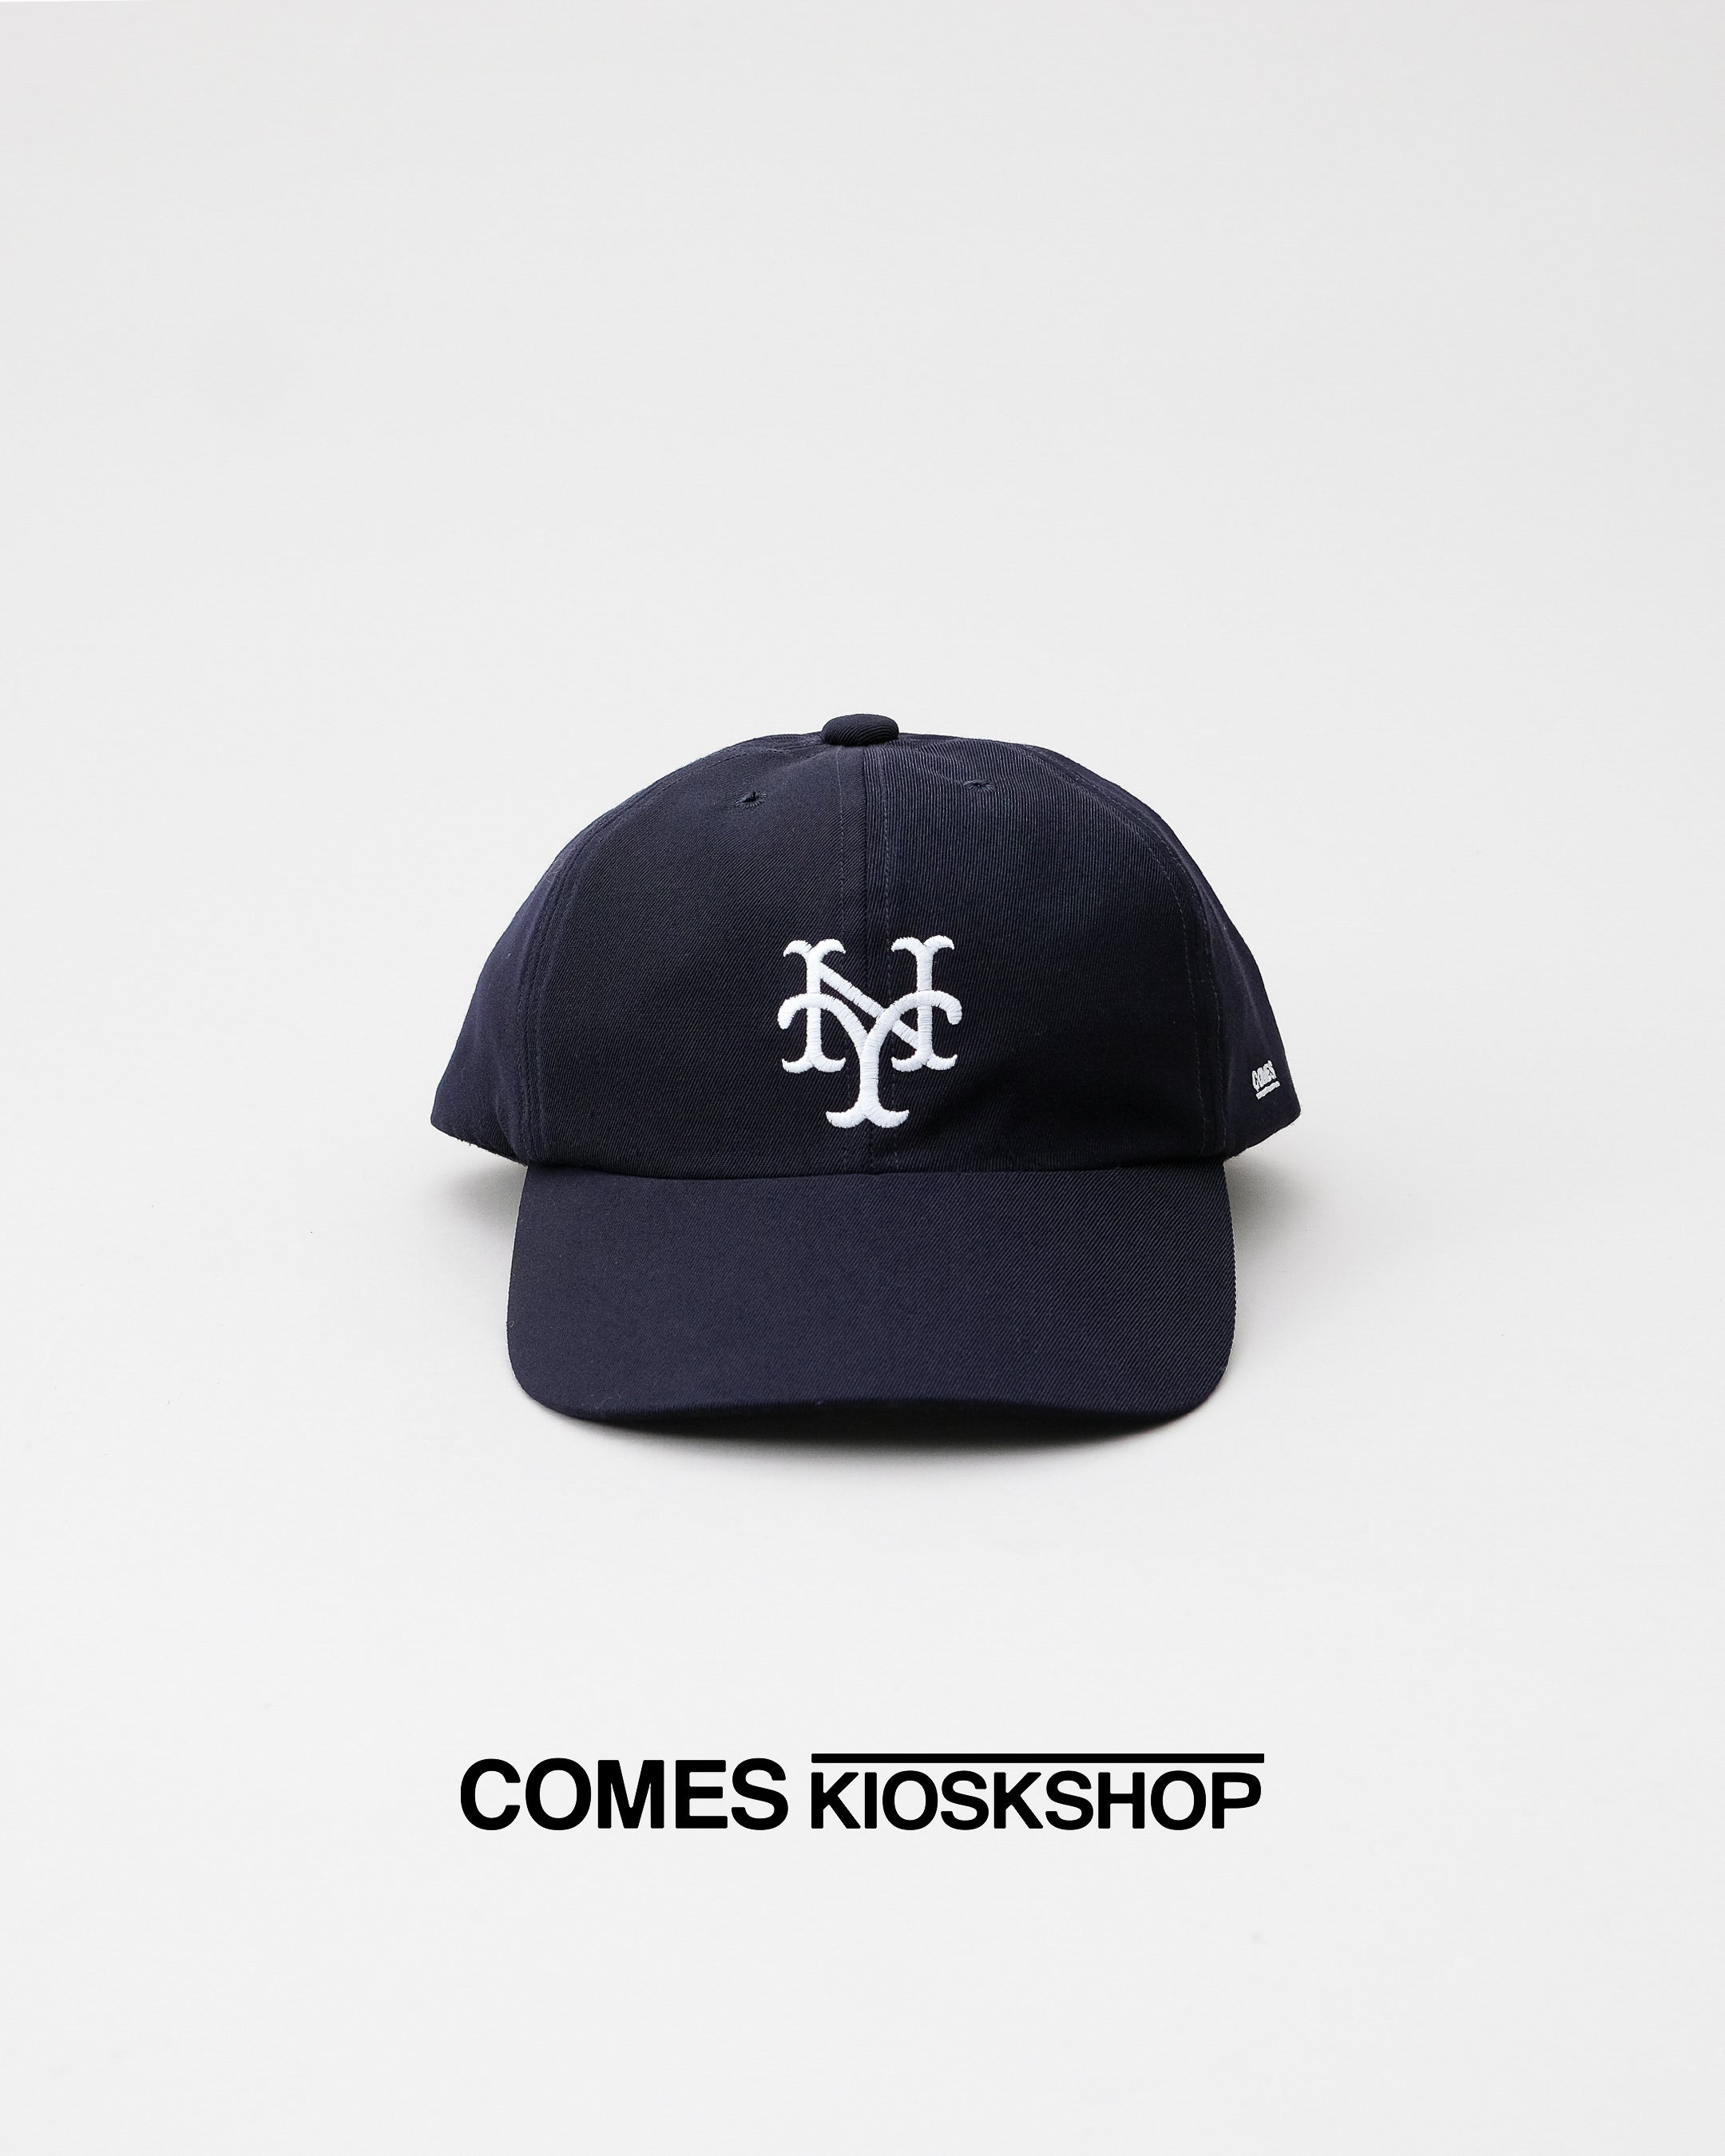 NY CUBANS CAP – COMES KIOSKSHOP